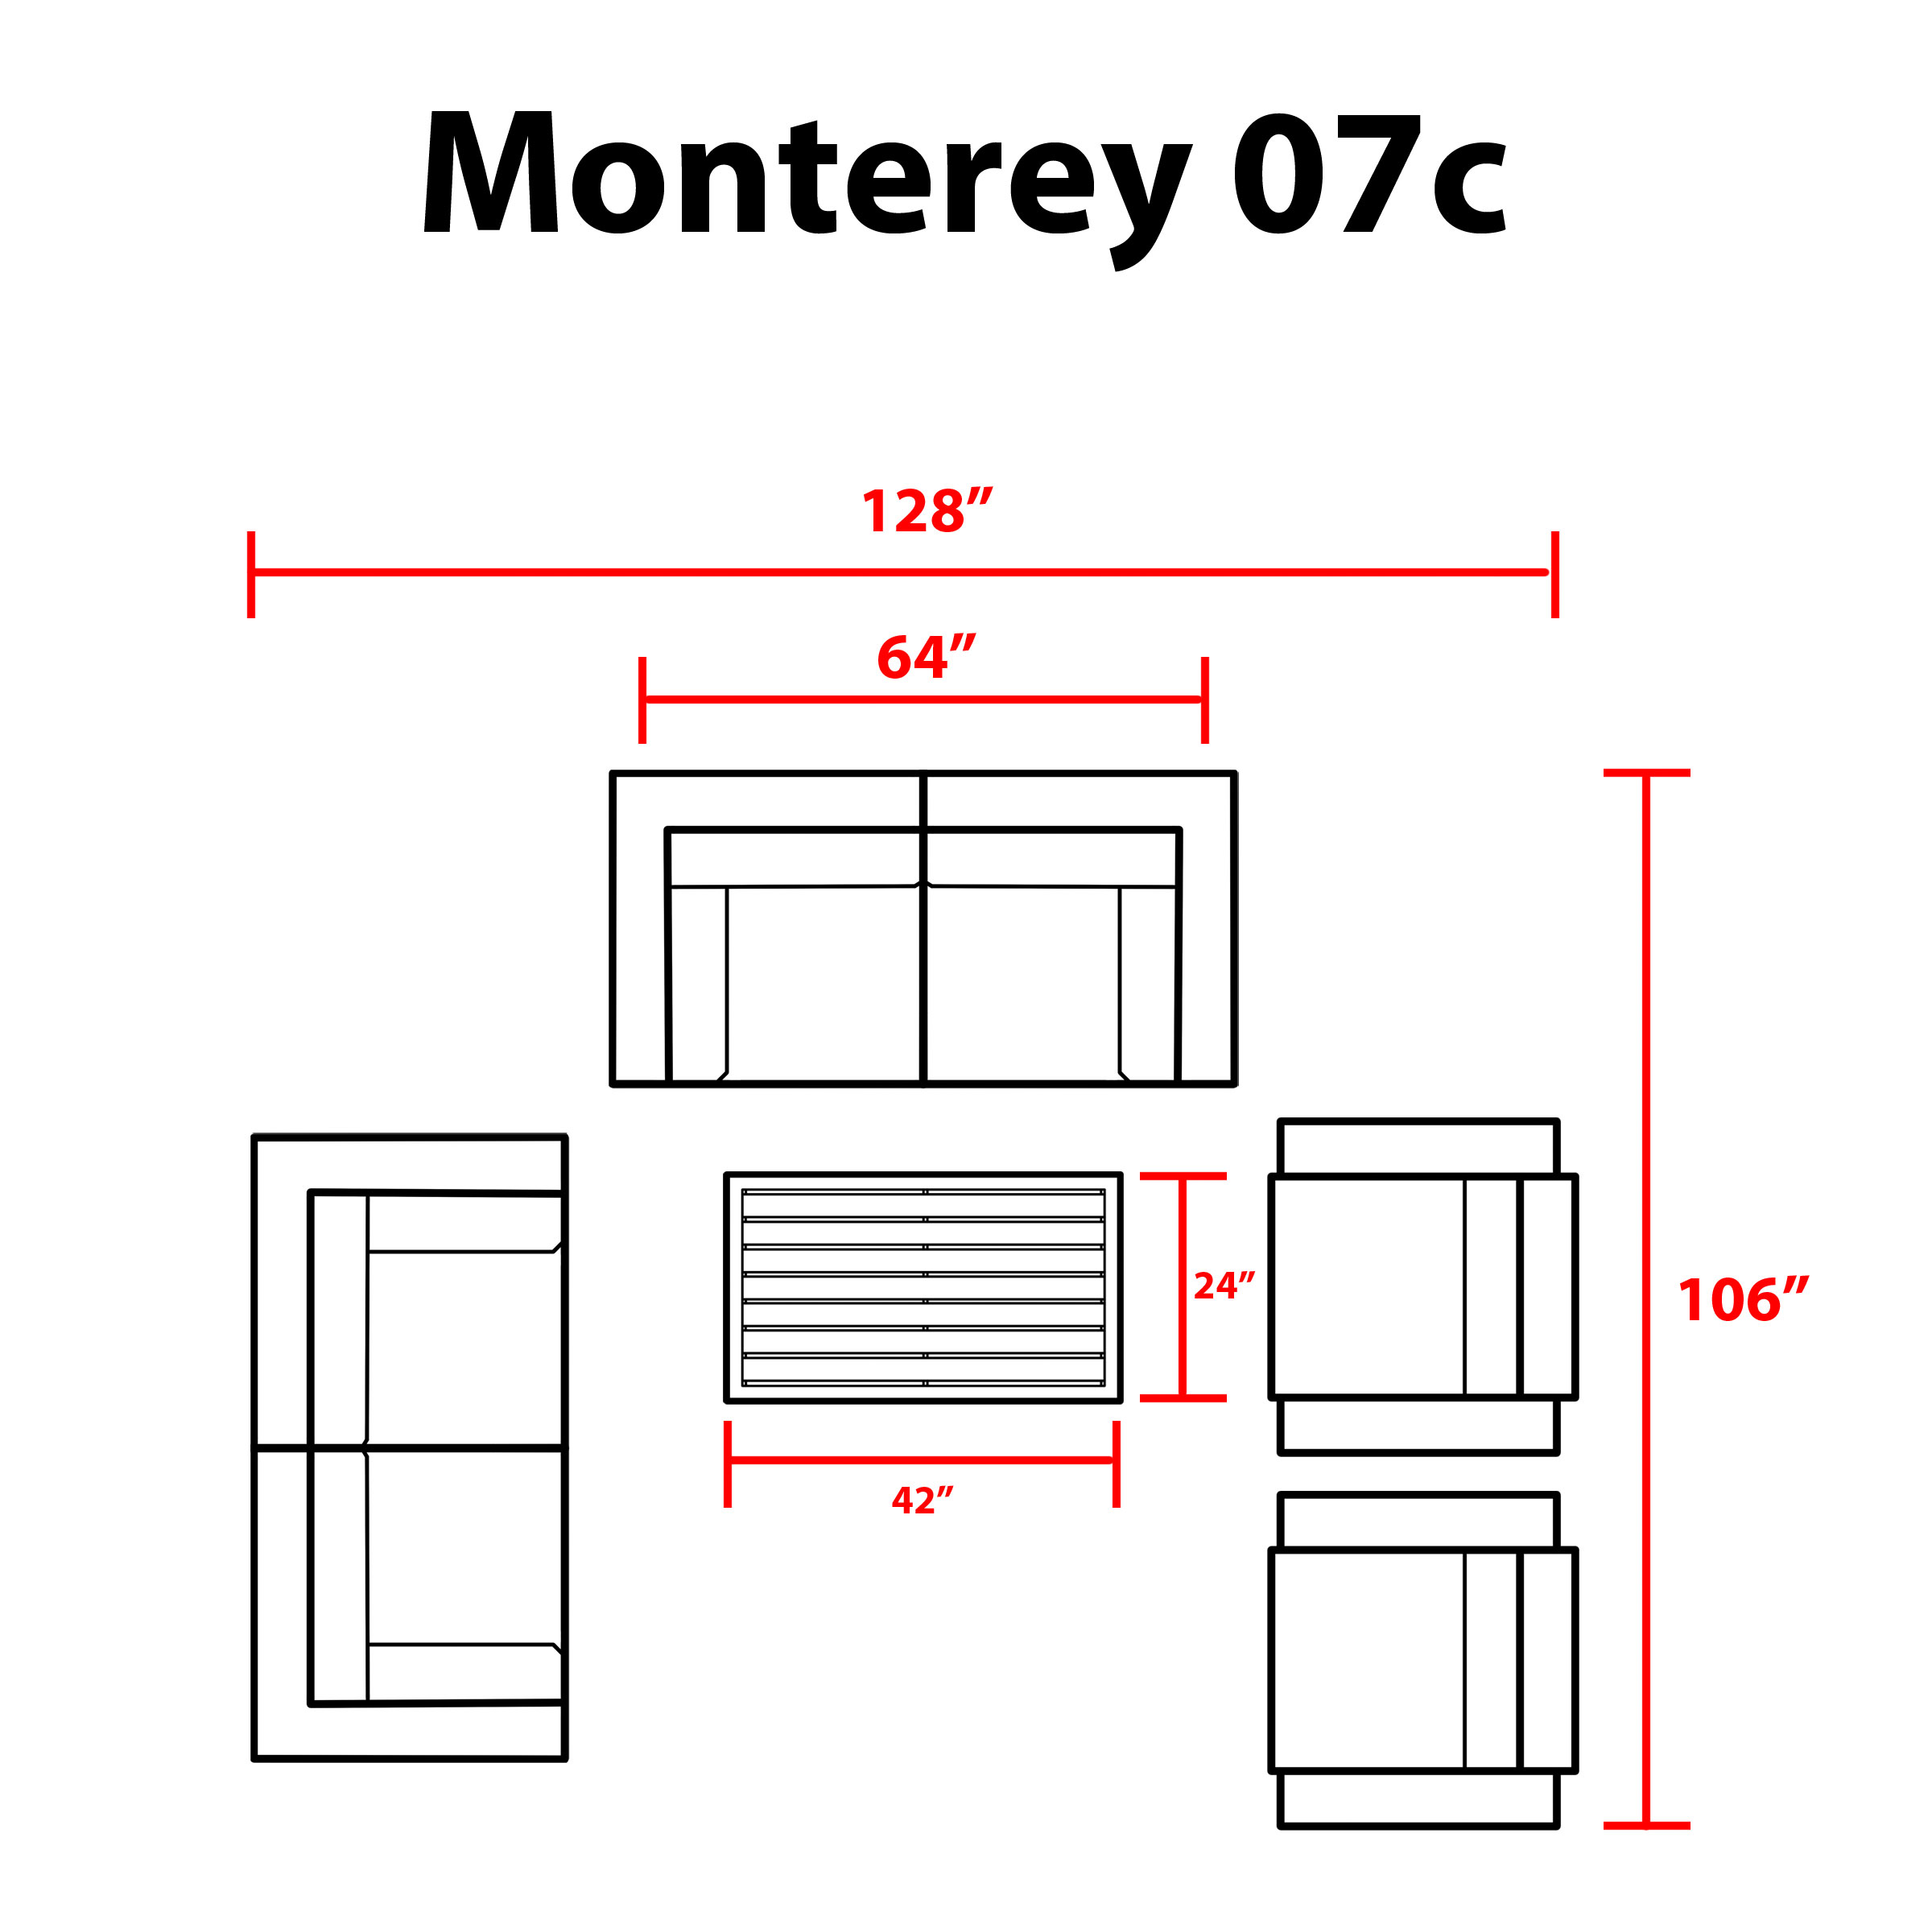 Monterey 7 Piece Outdoor Wicker Patio Furniture Set 07c - TK Classics